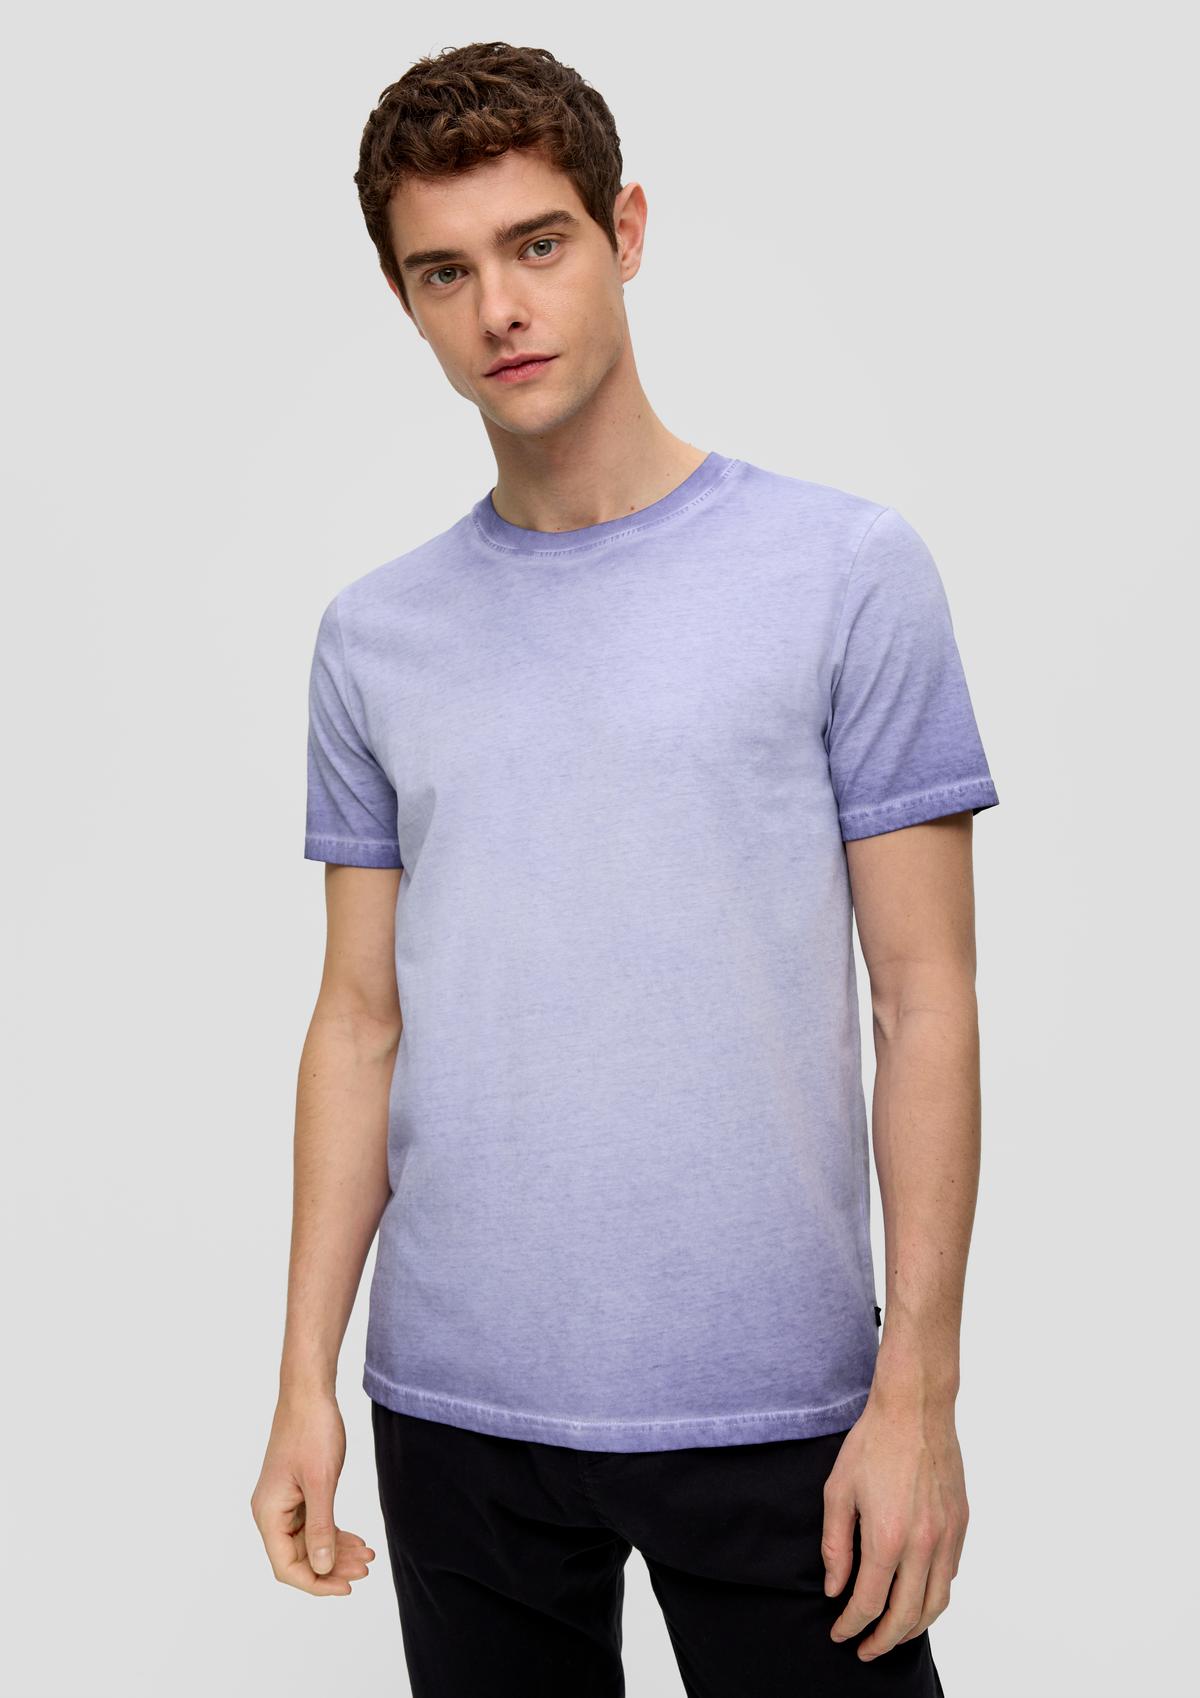 Garment-dyed katoenen shirt